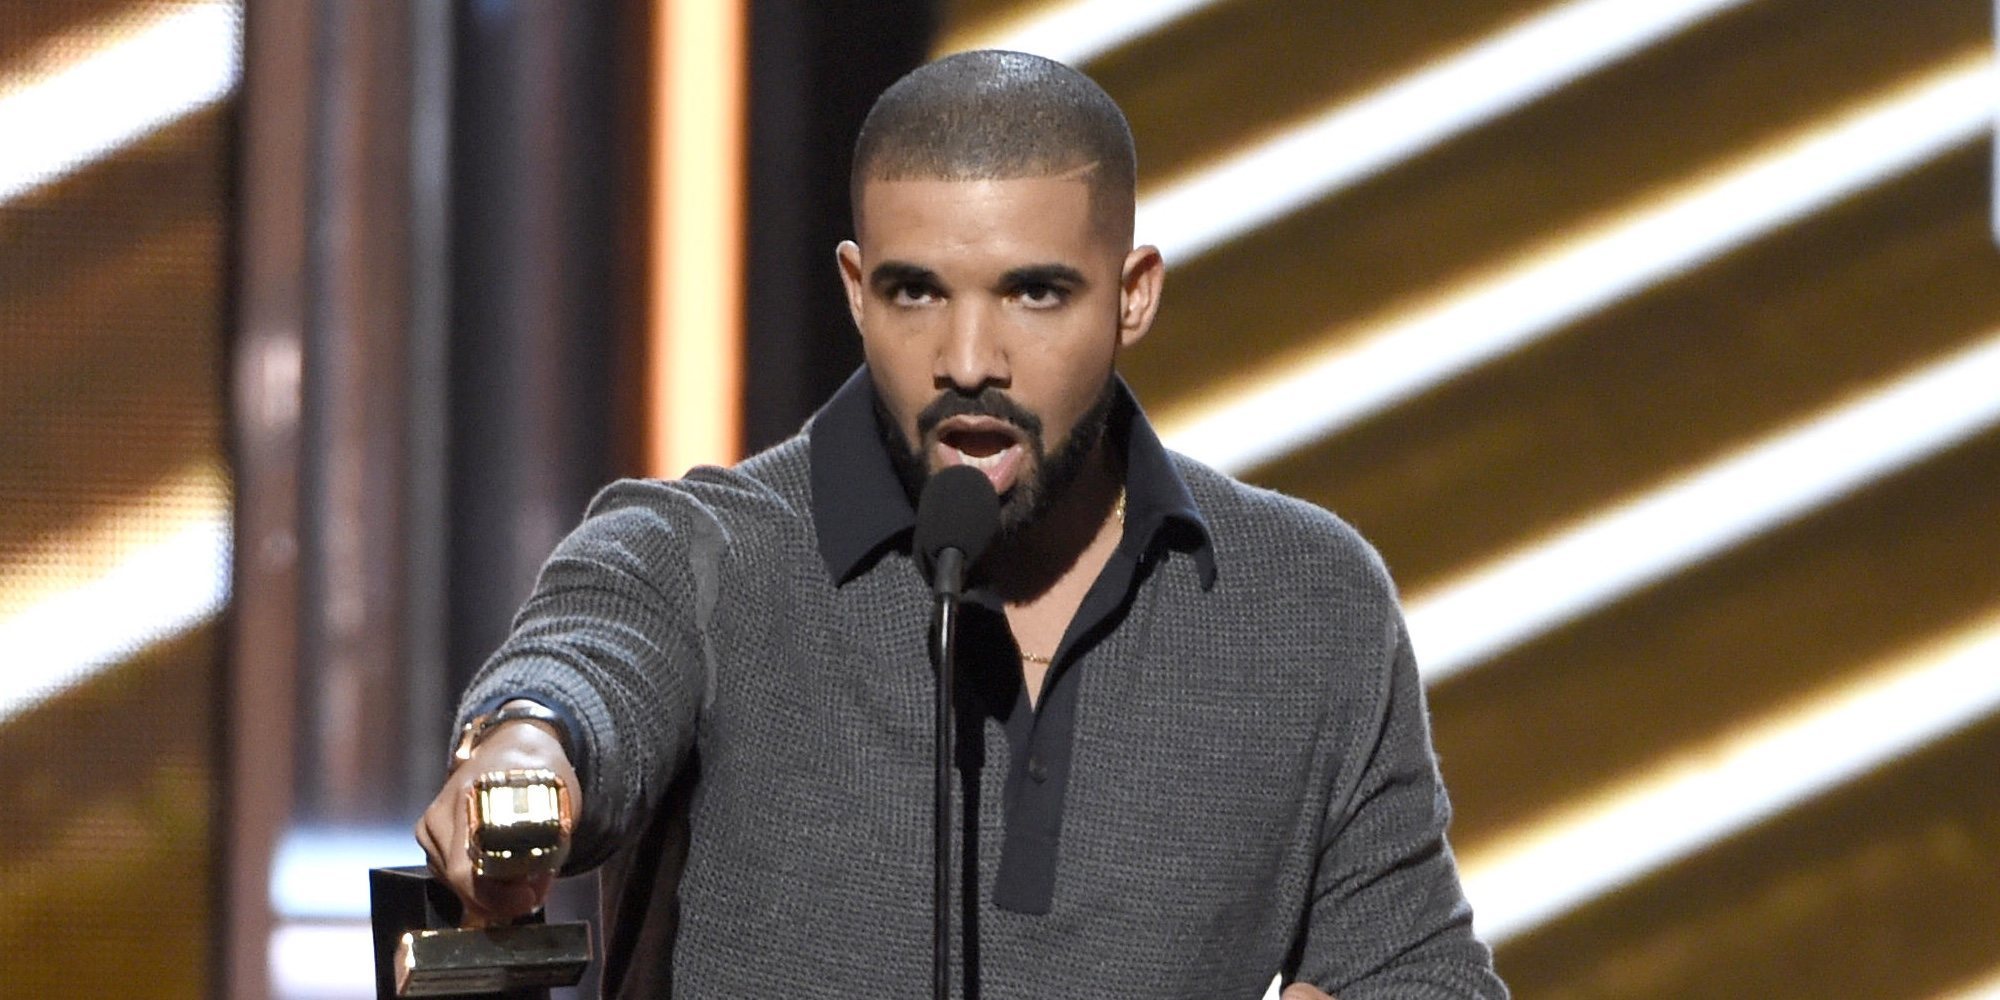 Polémica en los Grammy 2019 al cortar al reivindicativo discurso de Drake al recoger su gramófono